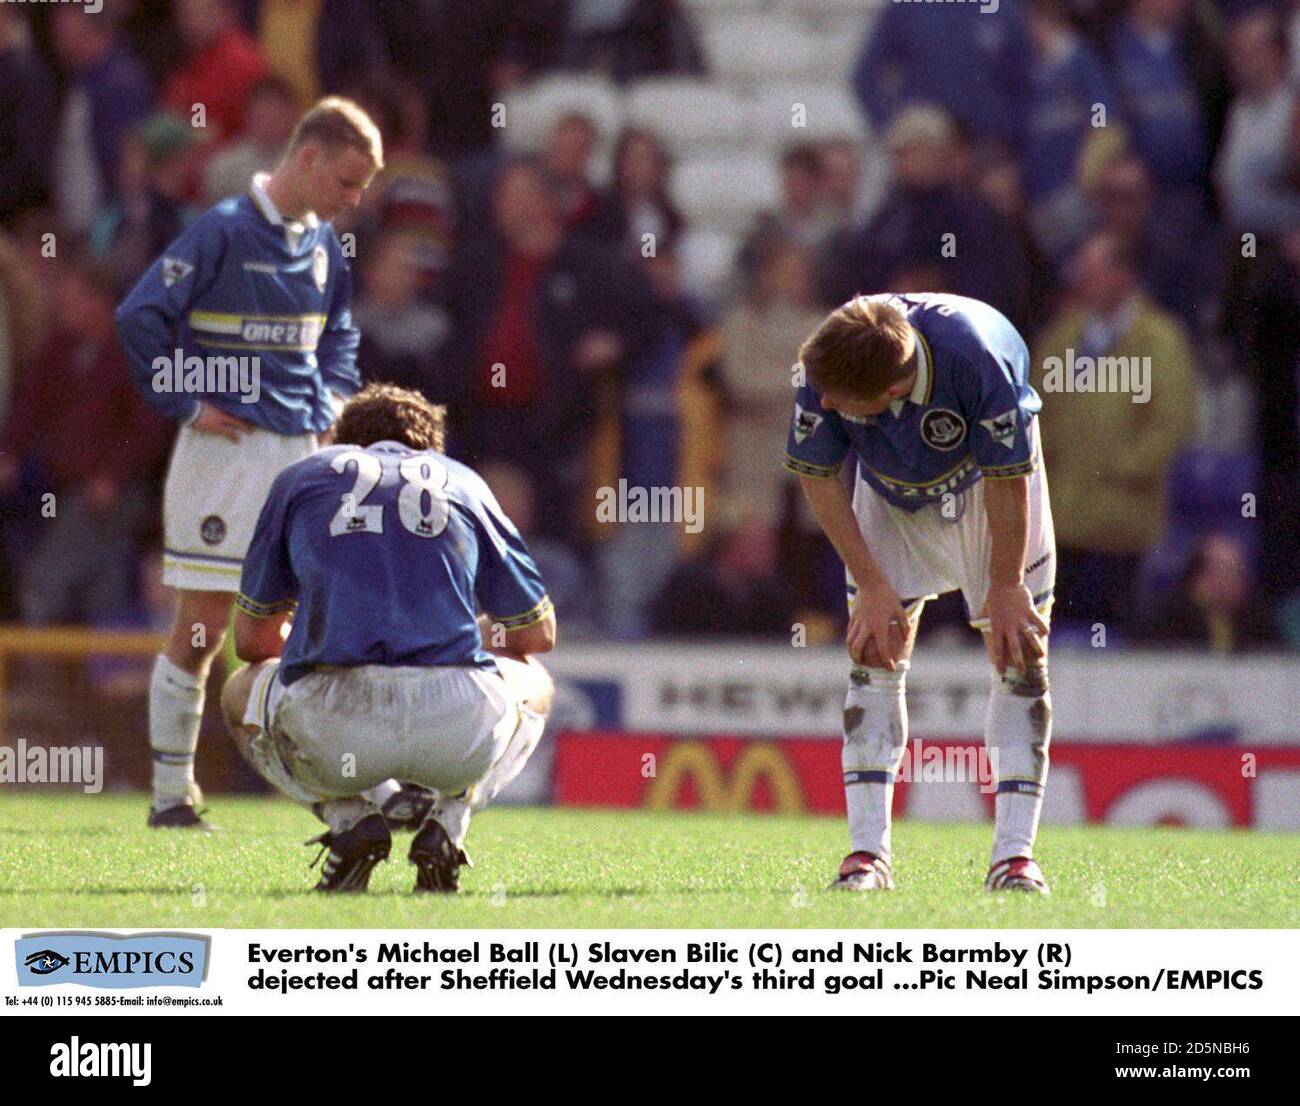 Michael ball (L) Slaven Bilic (C) et Nick Barmby d'Everton (R) abattu après le troisième but de Sheffield mercredi Banque D'Images